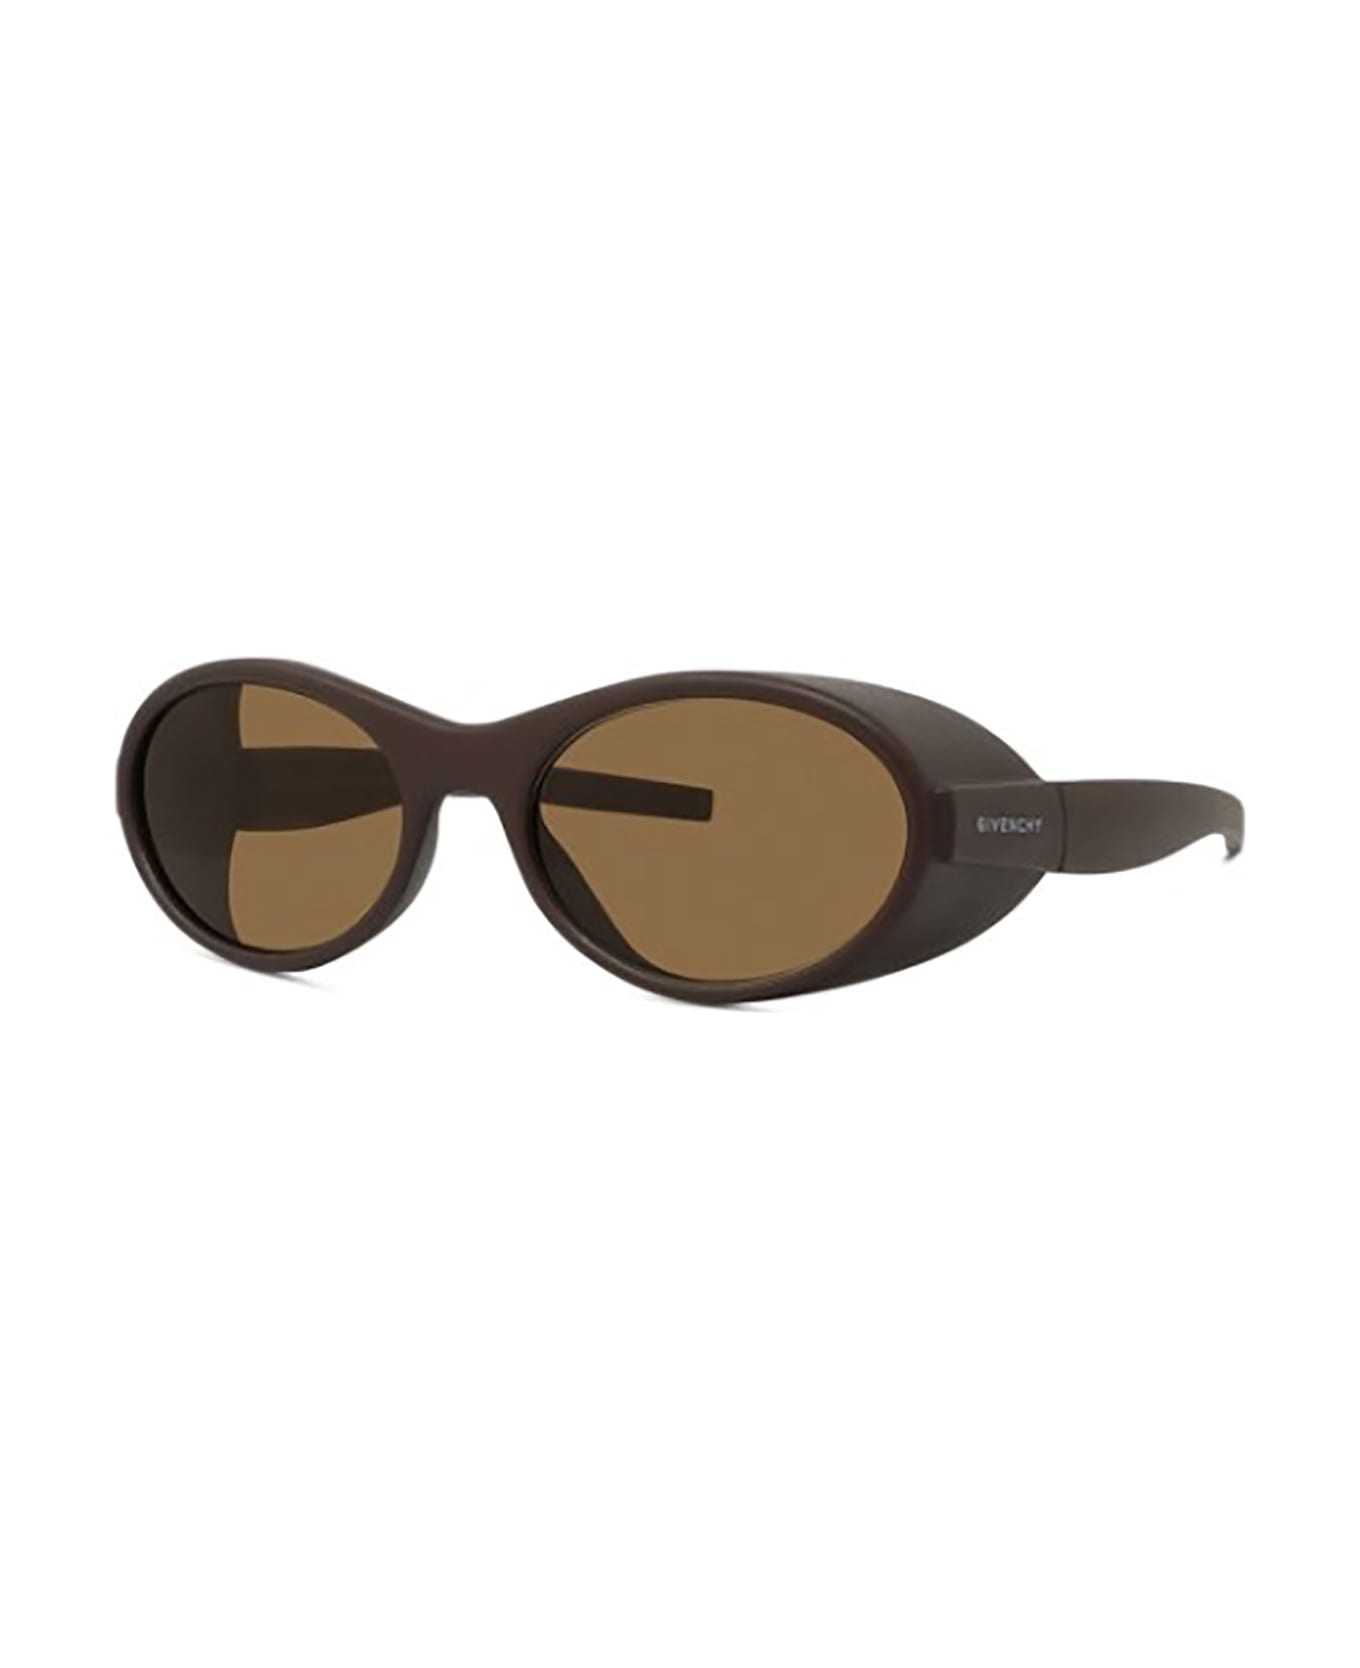 Givenchy Eyewear GV40065I Sunglasses - J サングラス